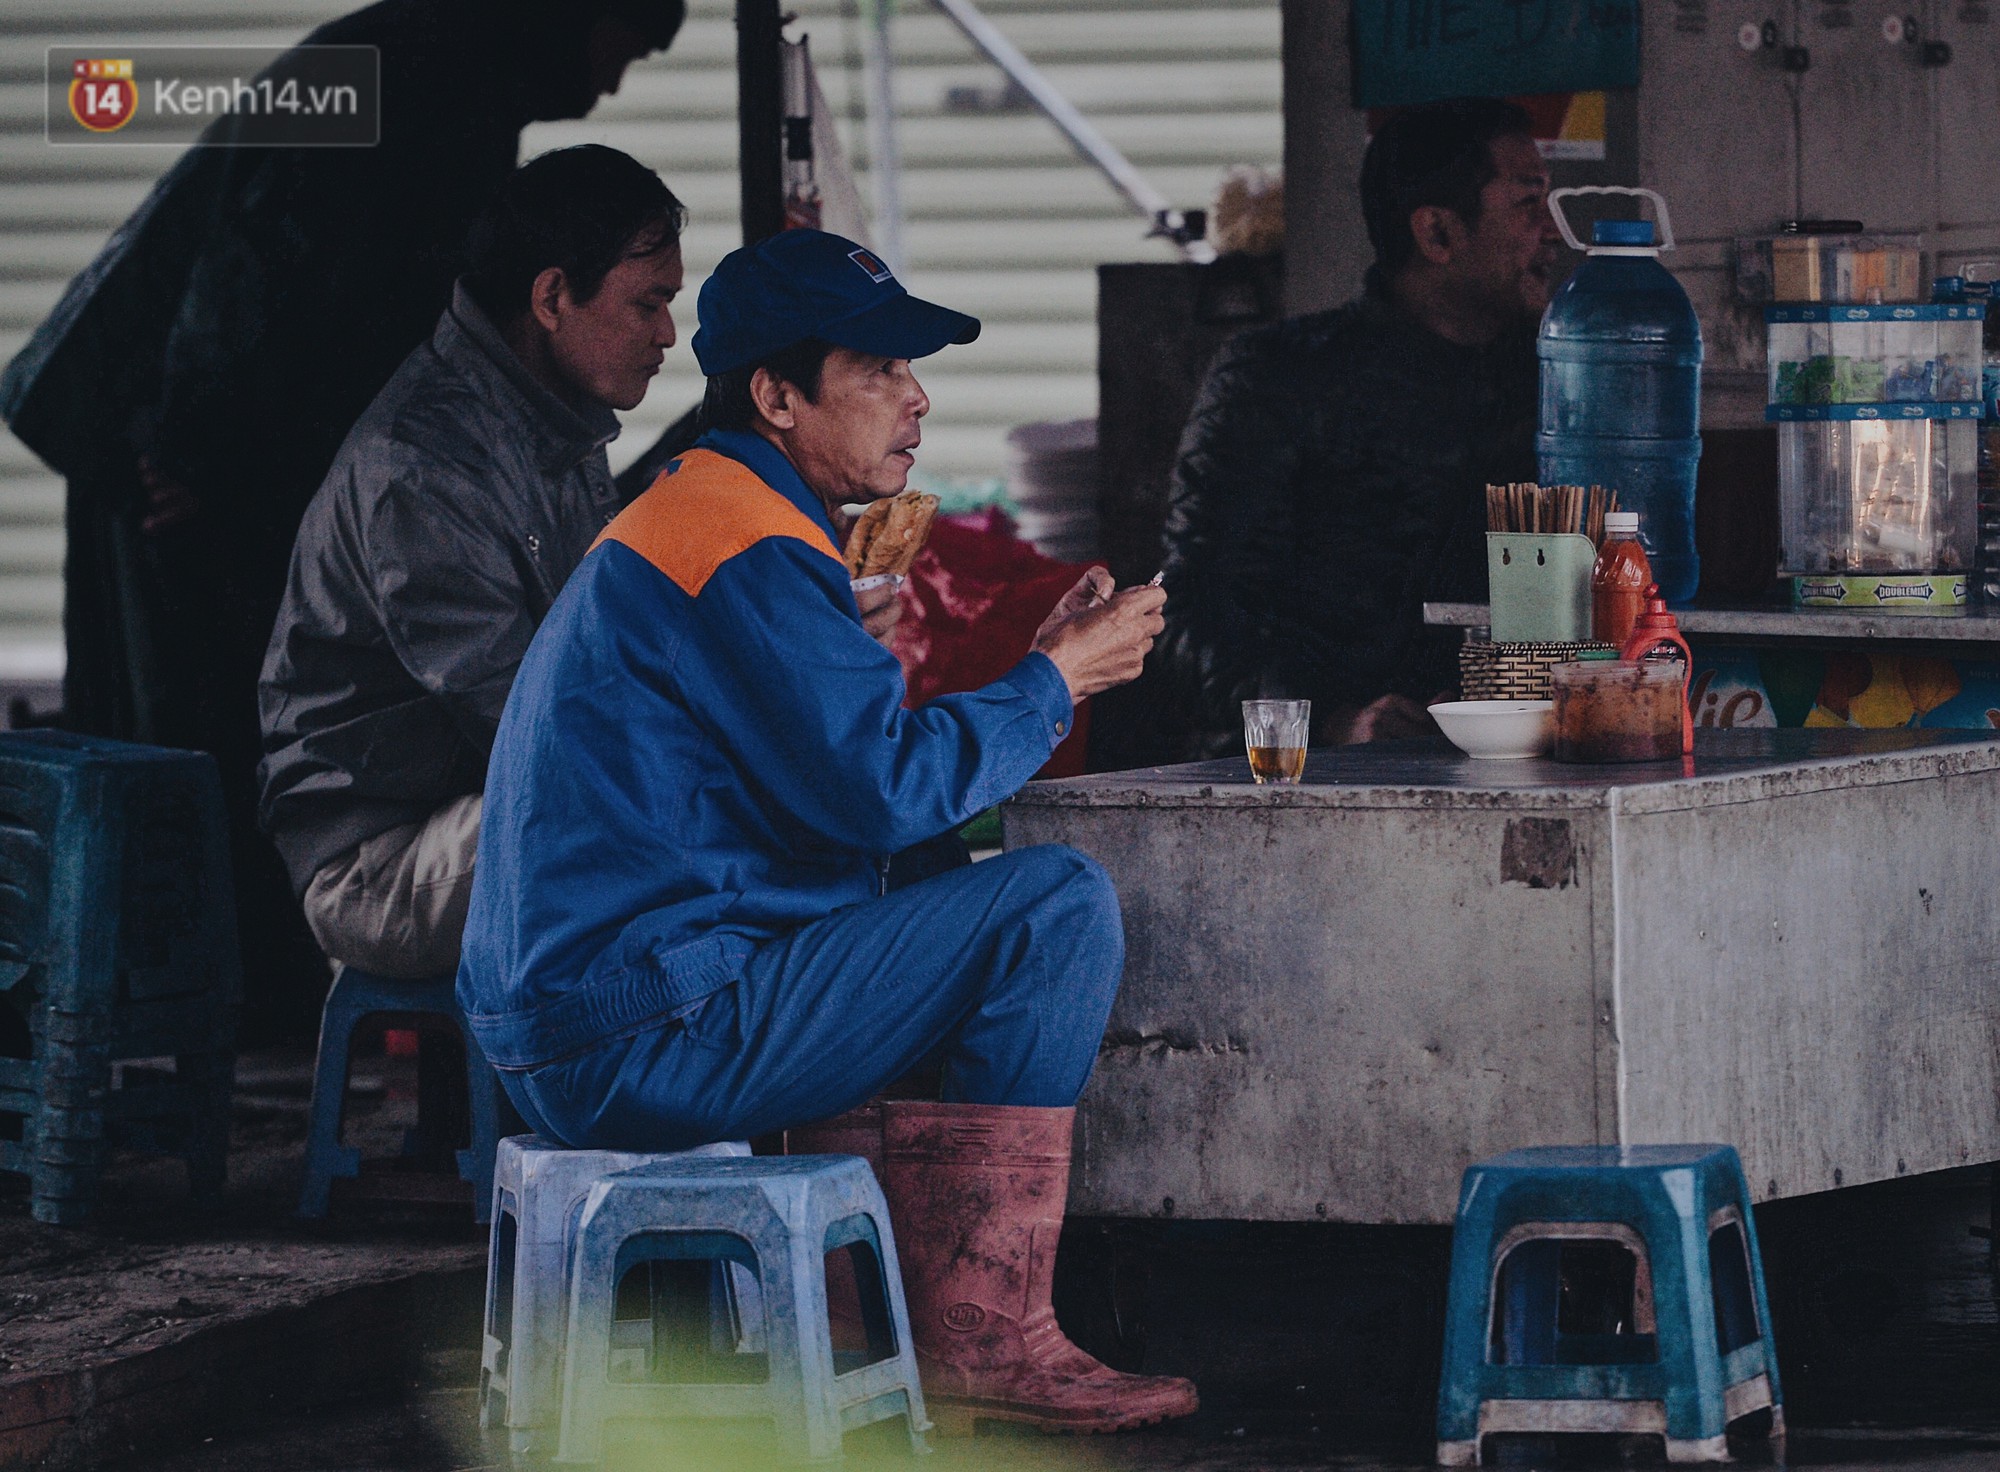 Chùm ảnh: Sau một đêm trở gió Hà Nội mưa lạnh xuống đến 17 độ C, người dân co ro ra đường-14